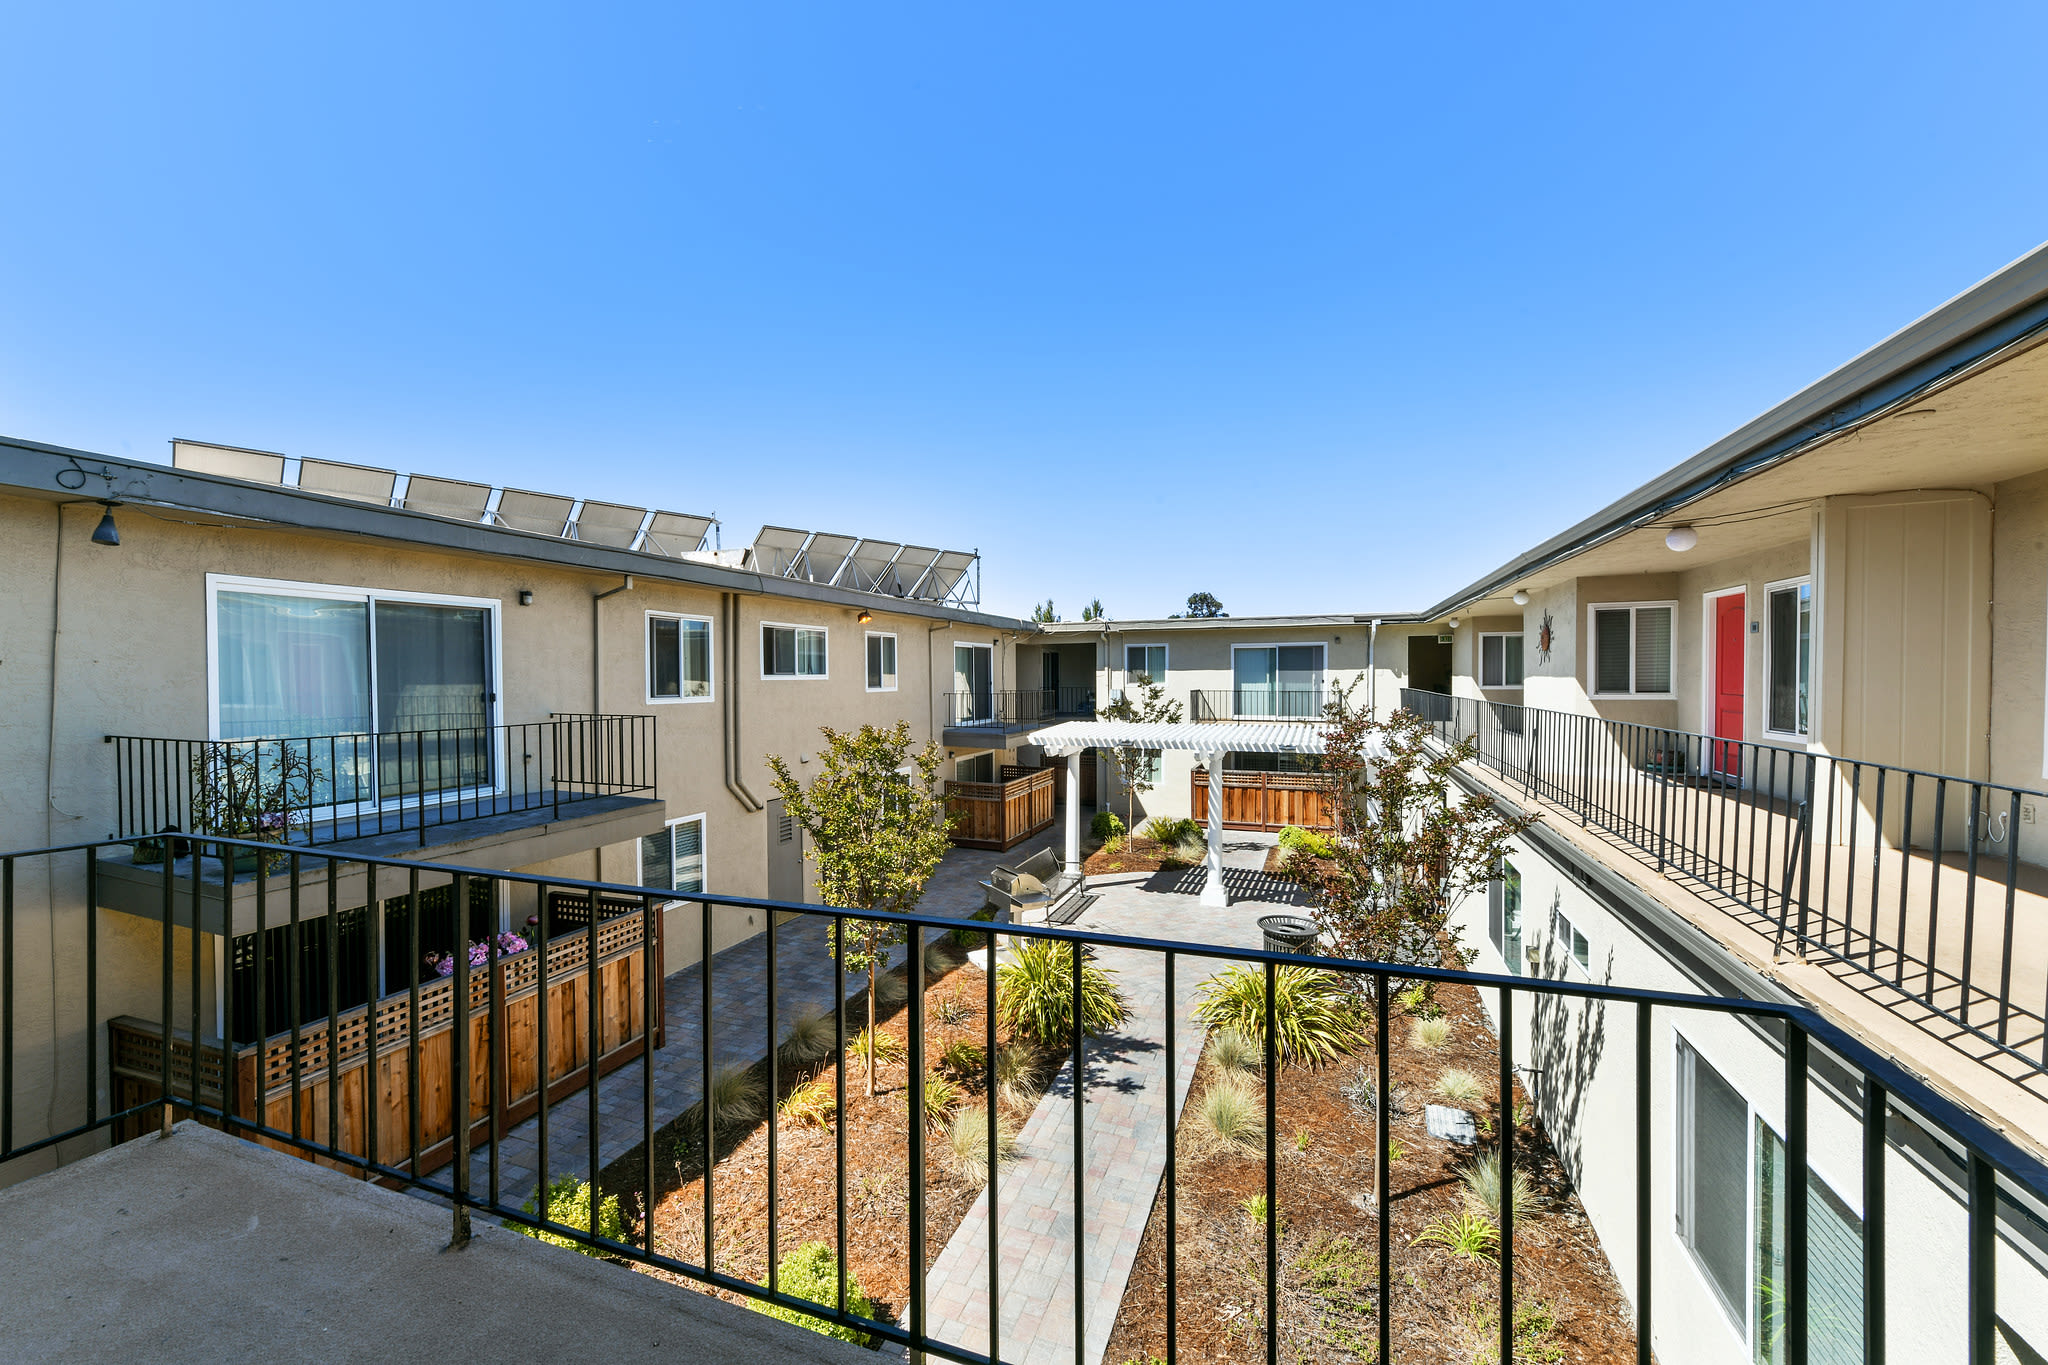 Reviews at Marina Haven Apartments in San Leandro, California